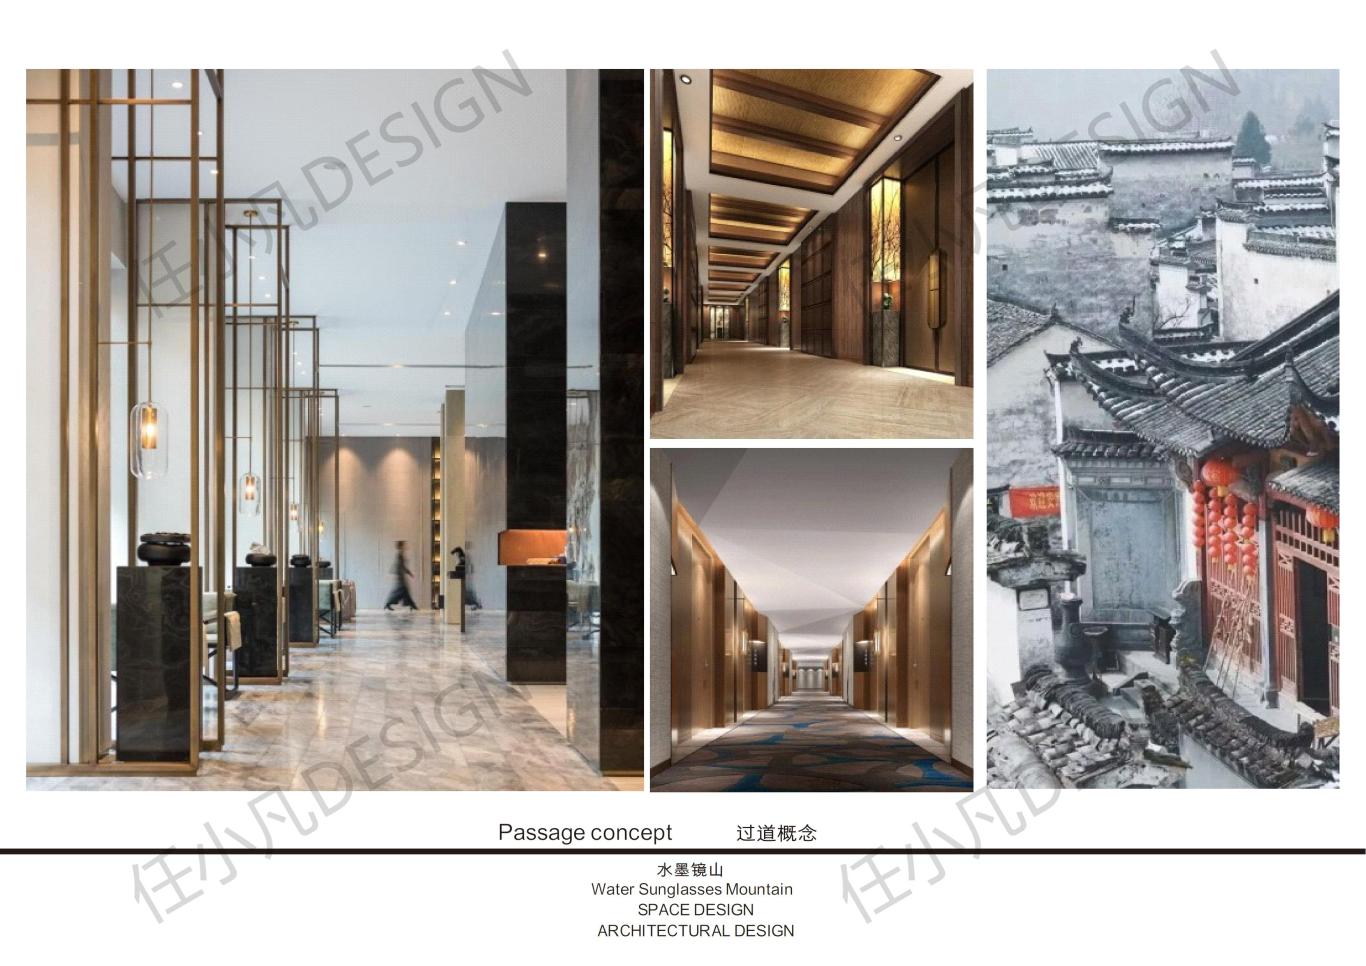 上高县水墨镜山酒店概念方案设计图68